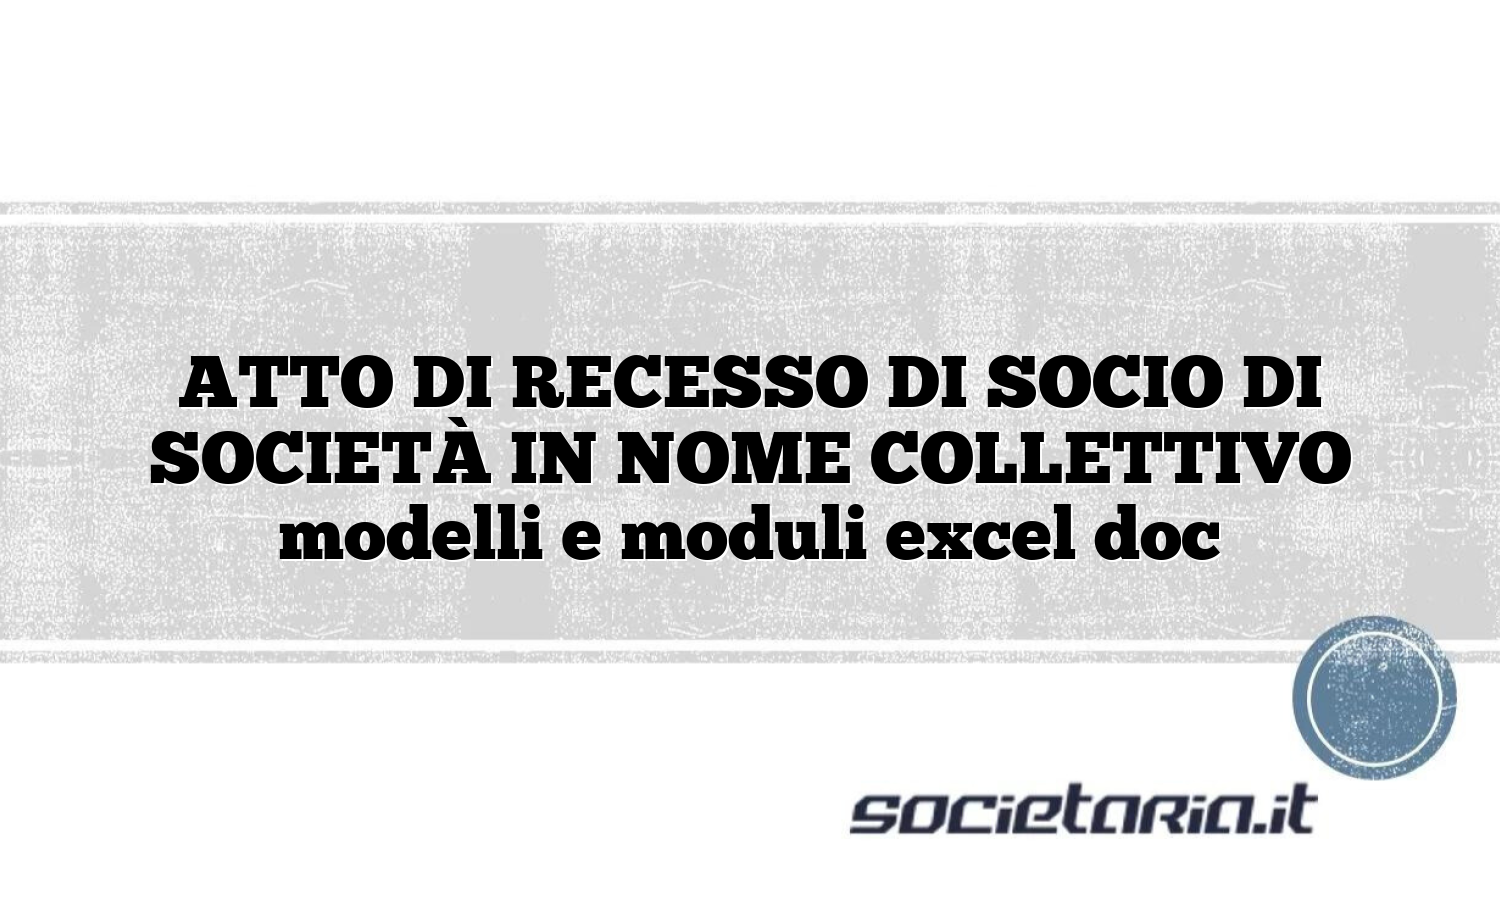 ATTO DI RECESSO DI SOCIO DI SOCIETÀ IN NOME COLLETTIVO modelli e moduli excel doc